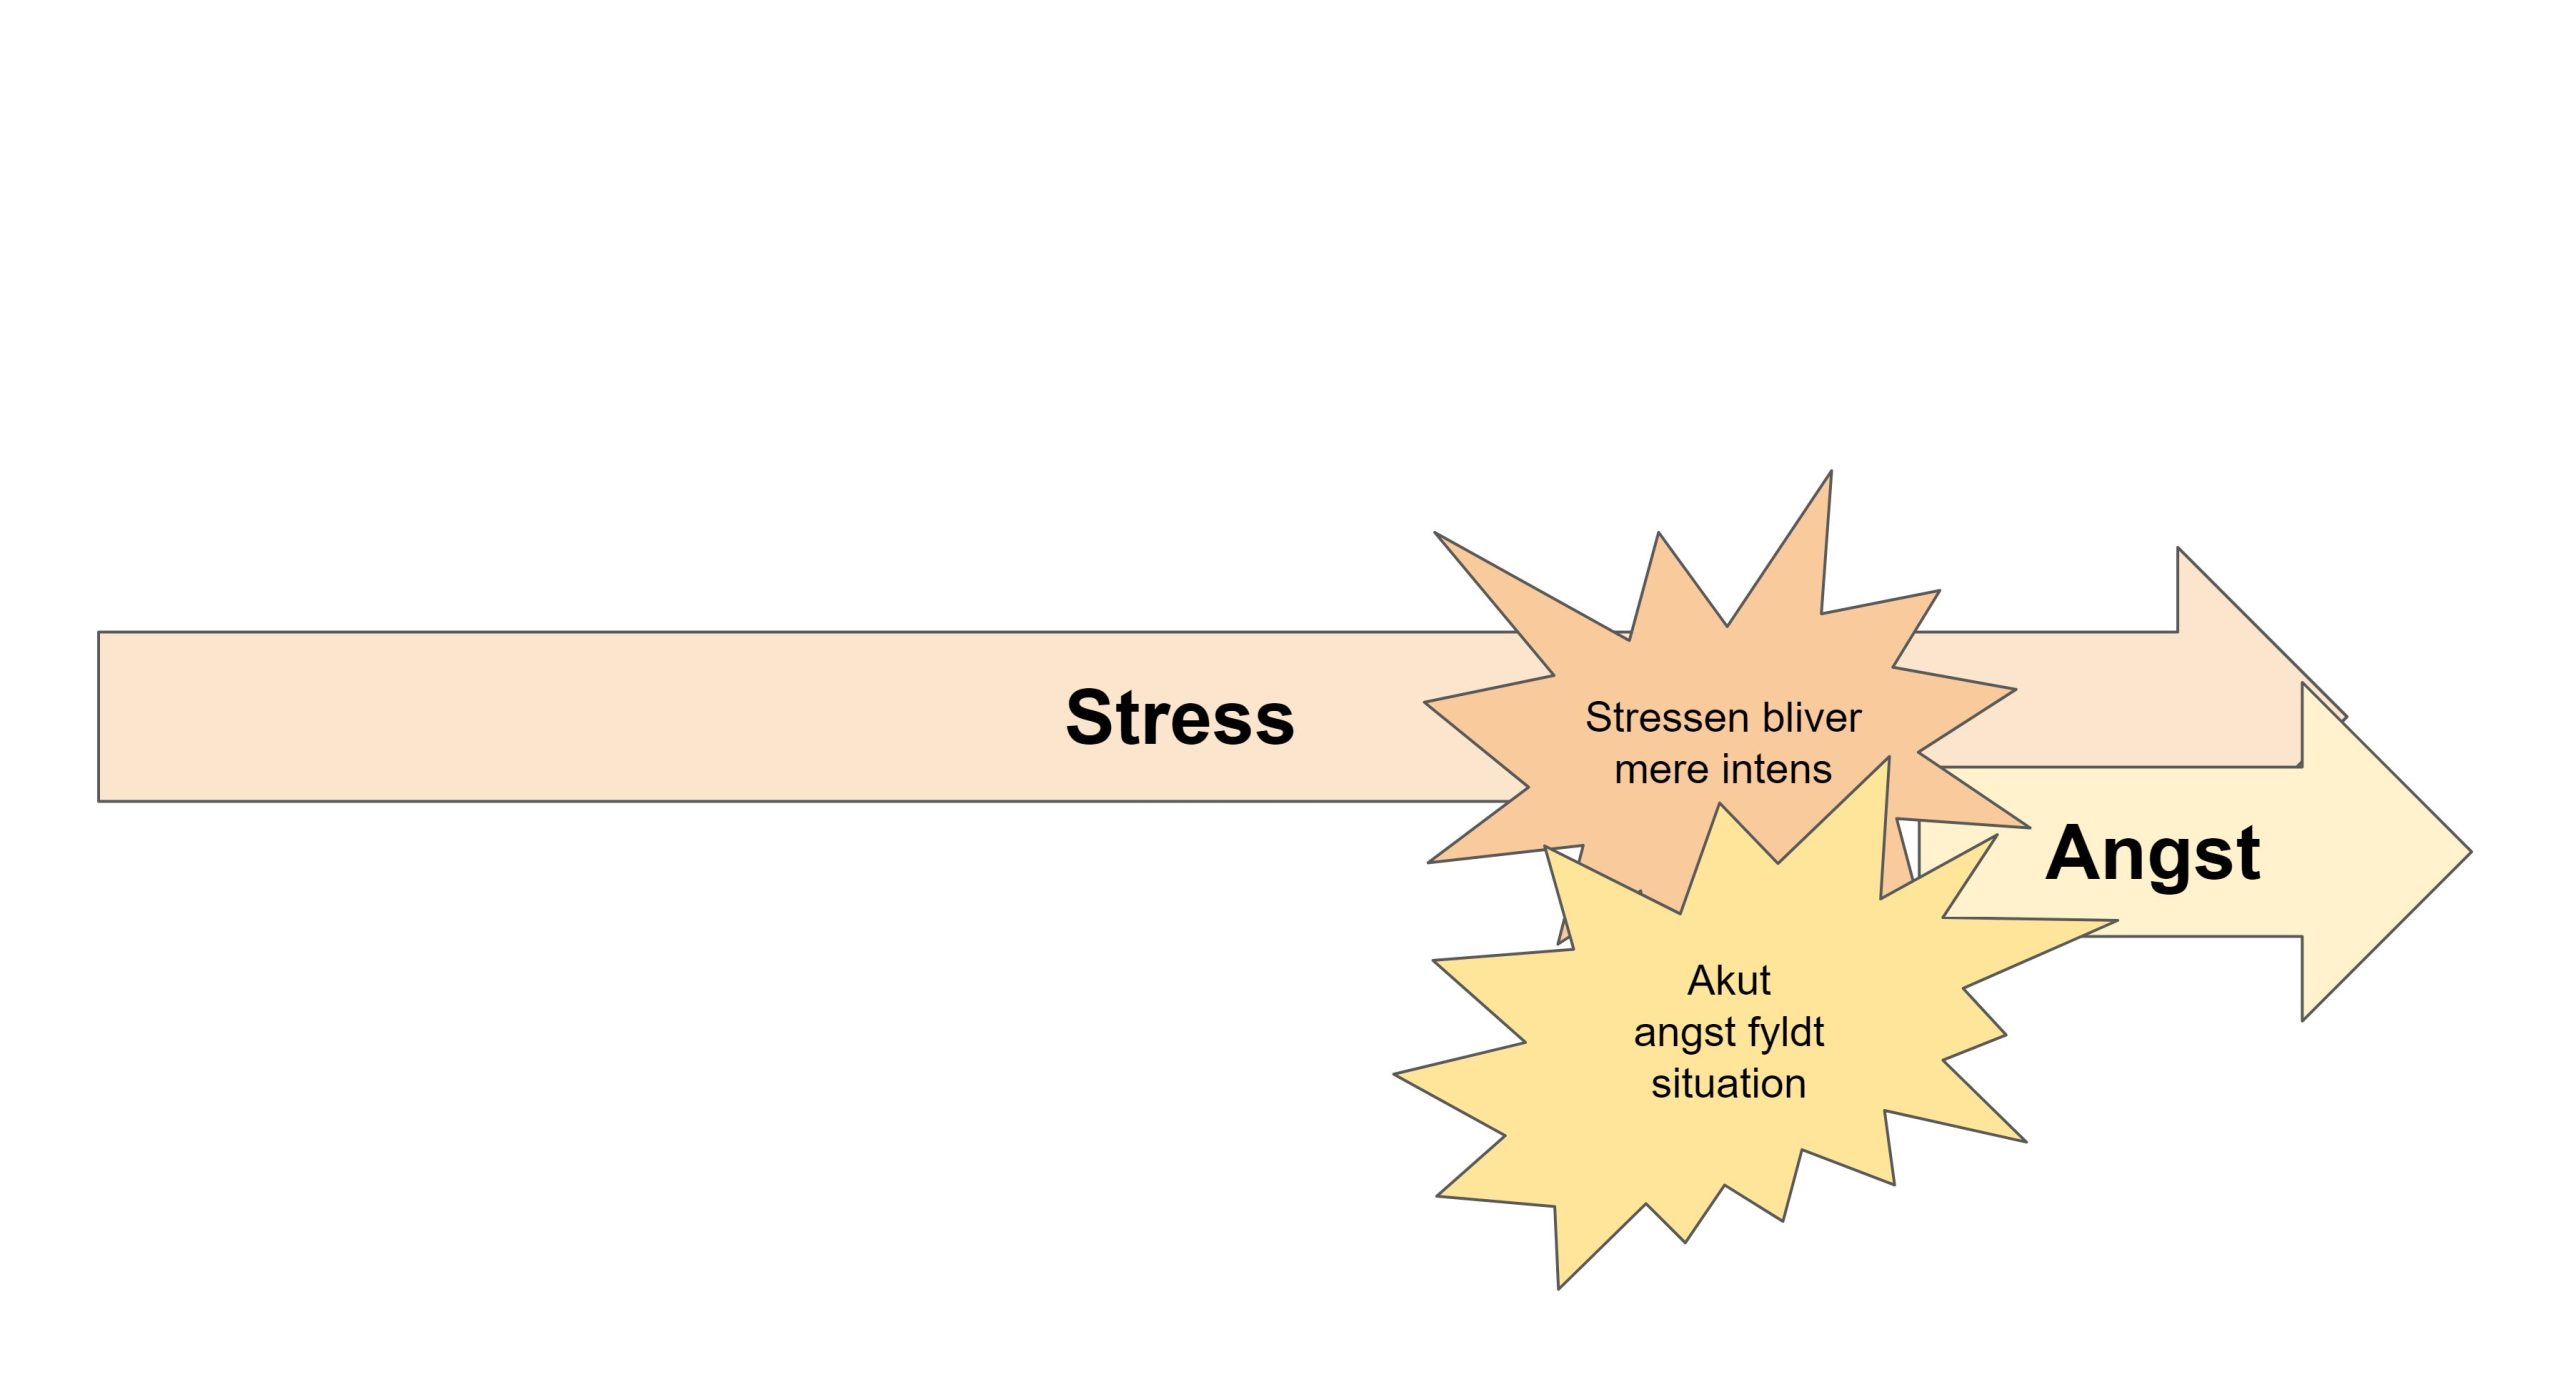 stressudløst angst - angsten opstår som følge af stressen